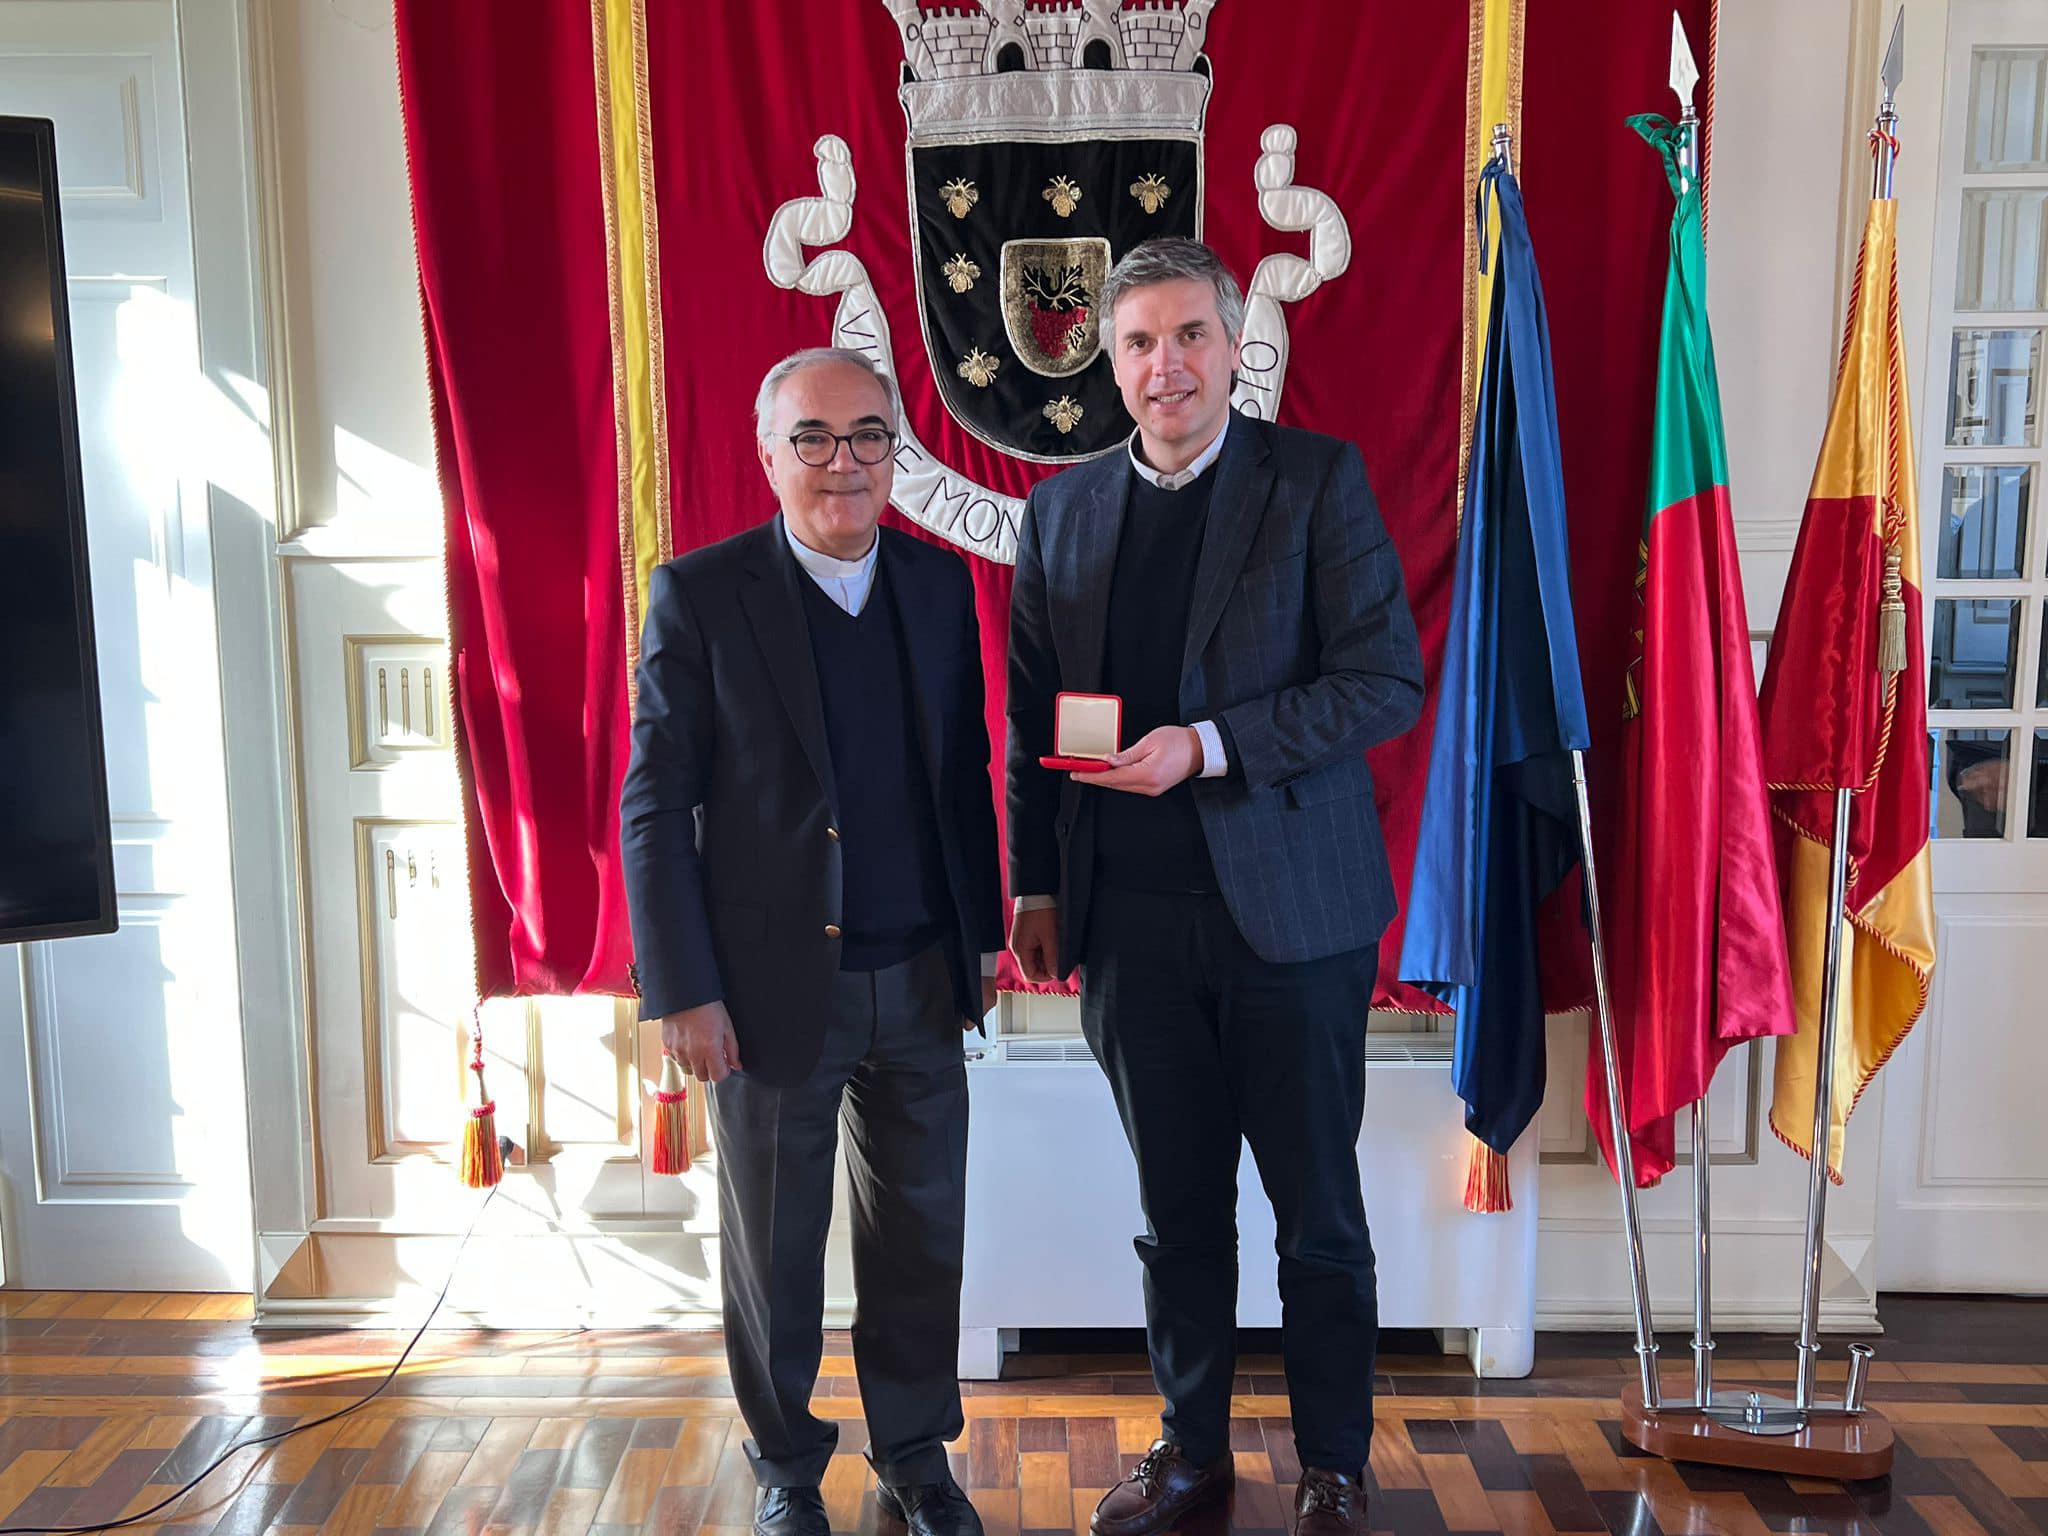 Bispo da Diocese de Vila Real entrega medalha comemorativa da Jornada Mundial da Juventude ao Município de Mondim de Basto